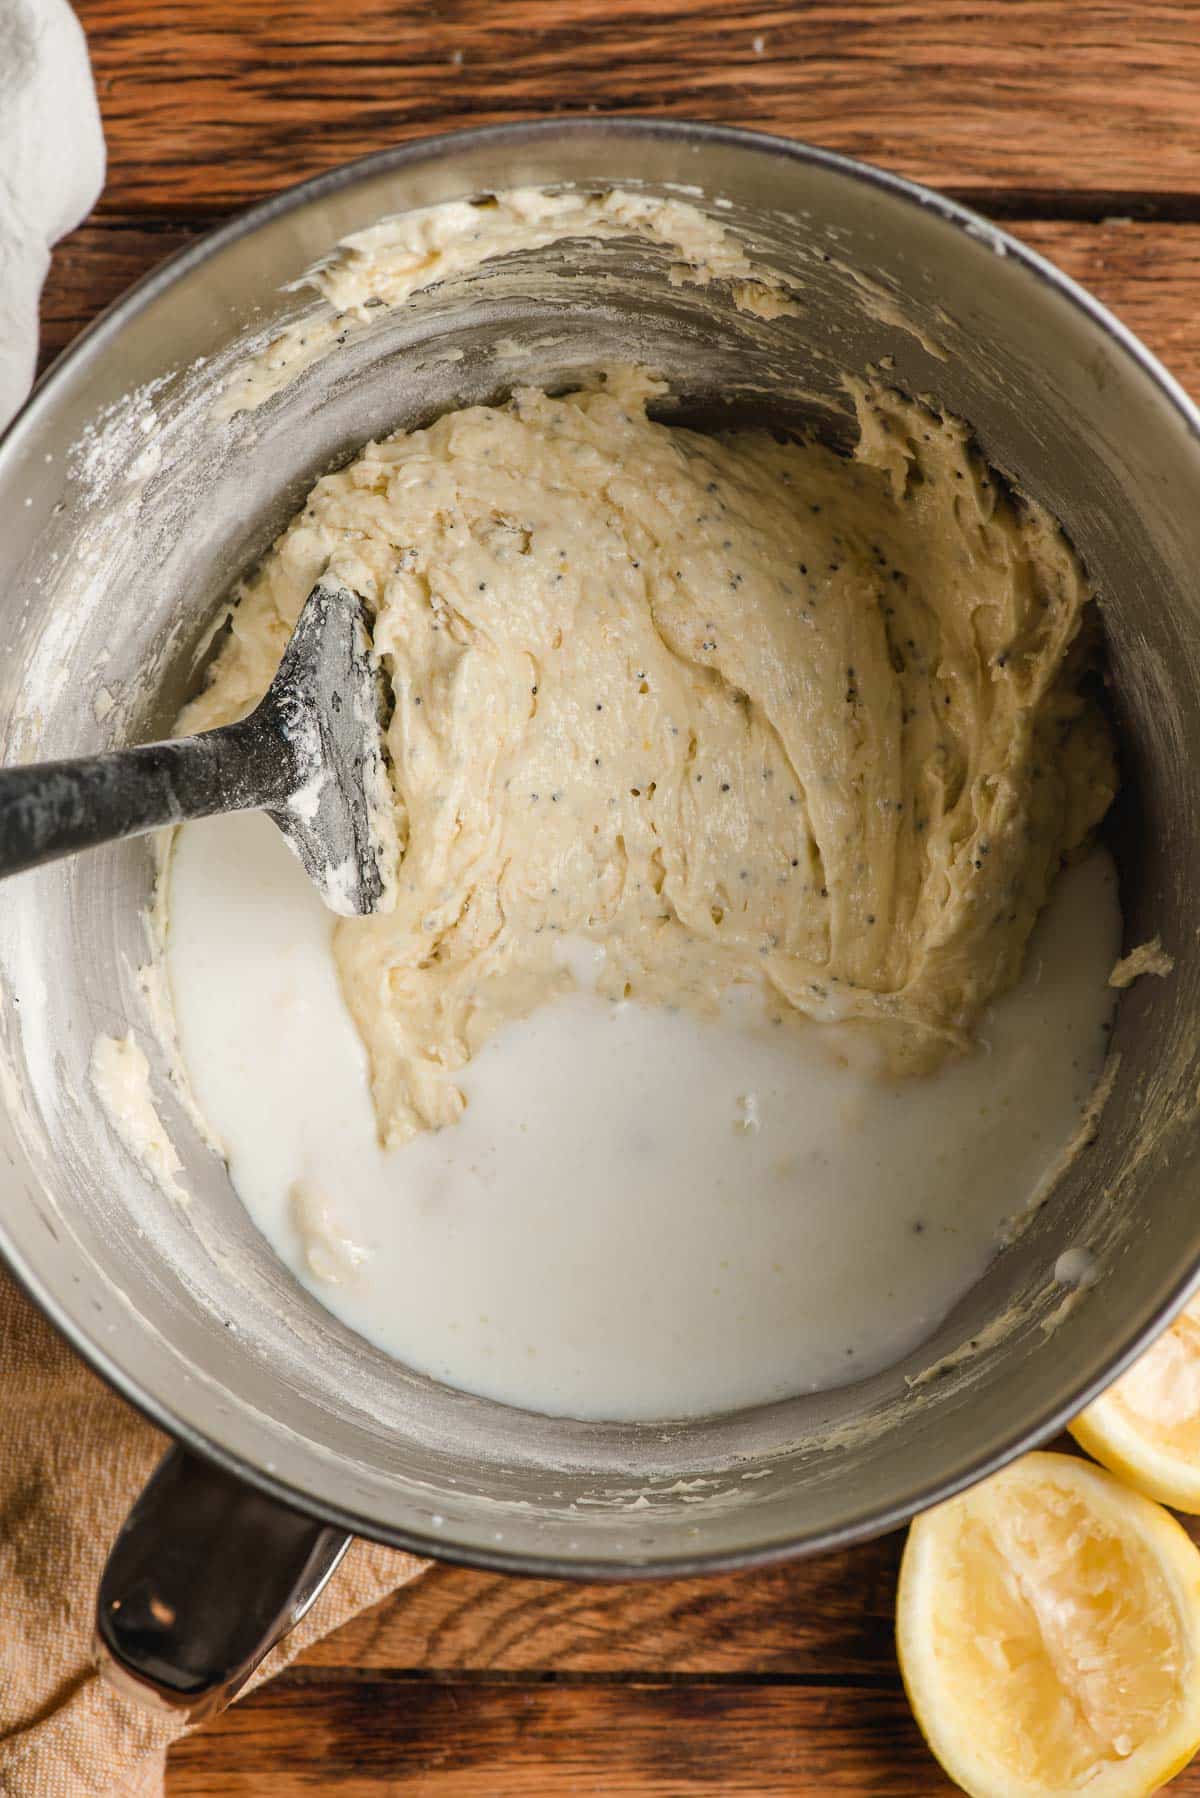 Buttermilk being stirred into muffin batter.